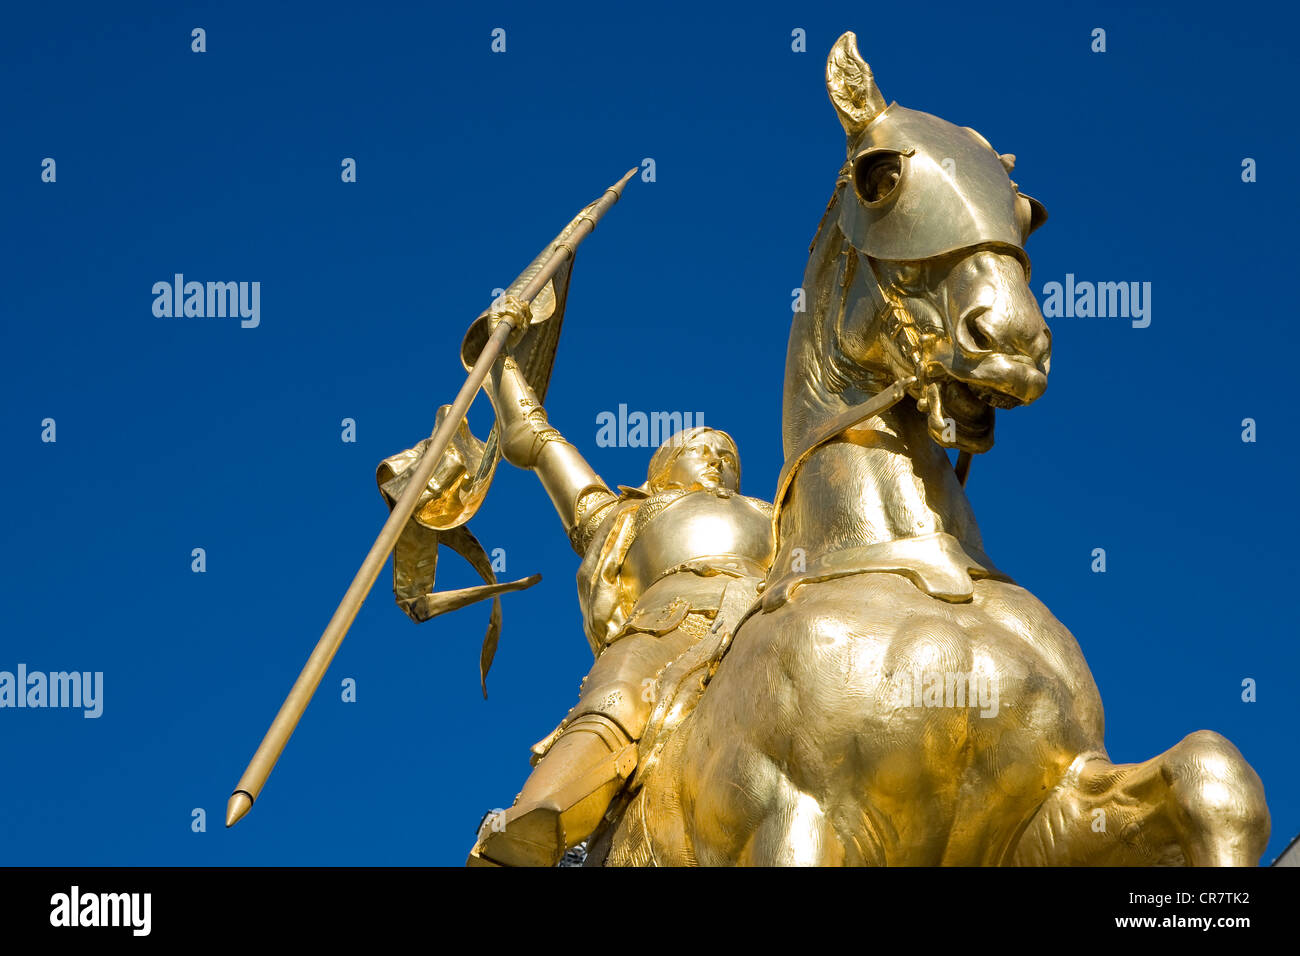 Francia, Parigi, Place des Pyramides, statua equestre di Joan Arc da Emmanuel Fremiet Foto Stock